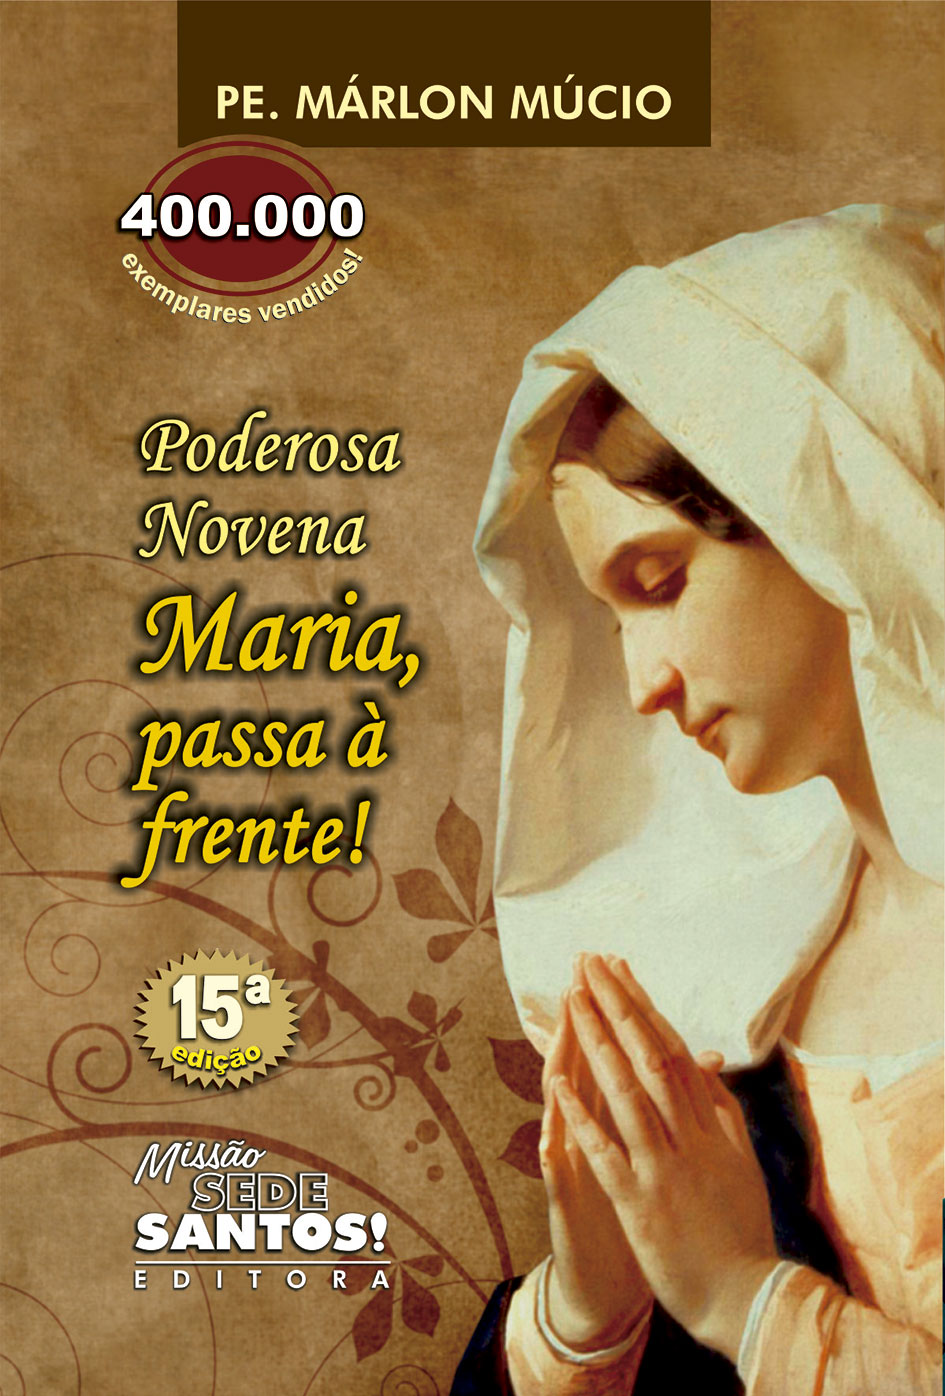 Oração Maria Passa na Frente - amem